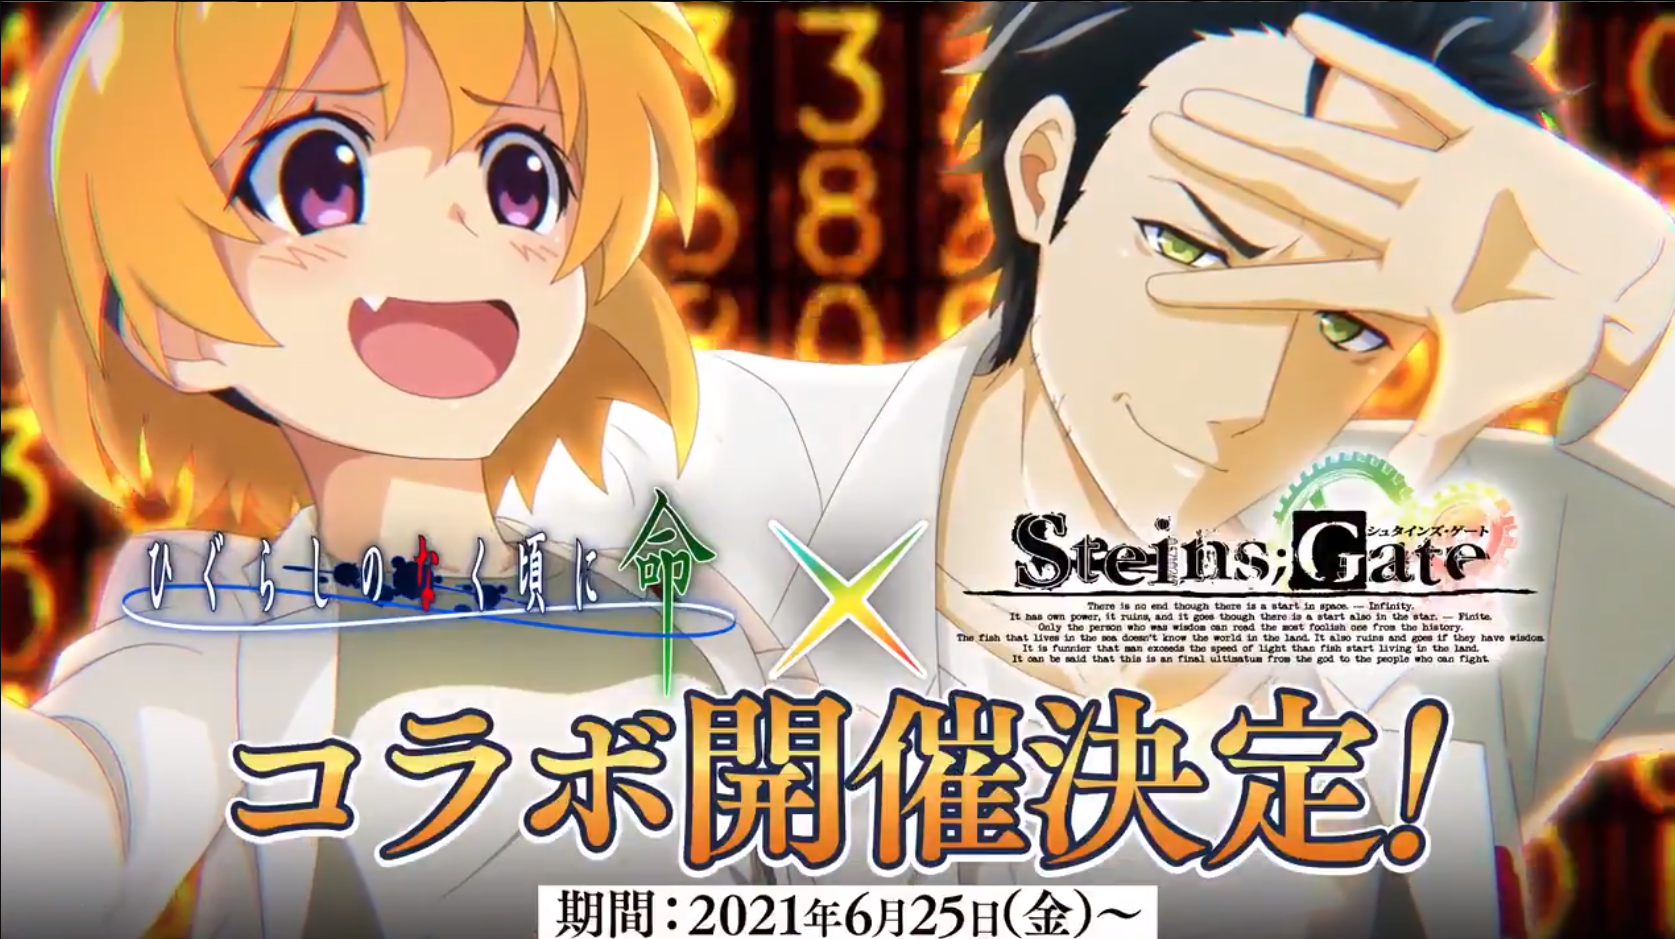 Steins Gate Higurashi No Naku Koro Ni Mei Collaboration Announced Kiri Kiri Basara